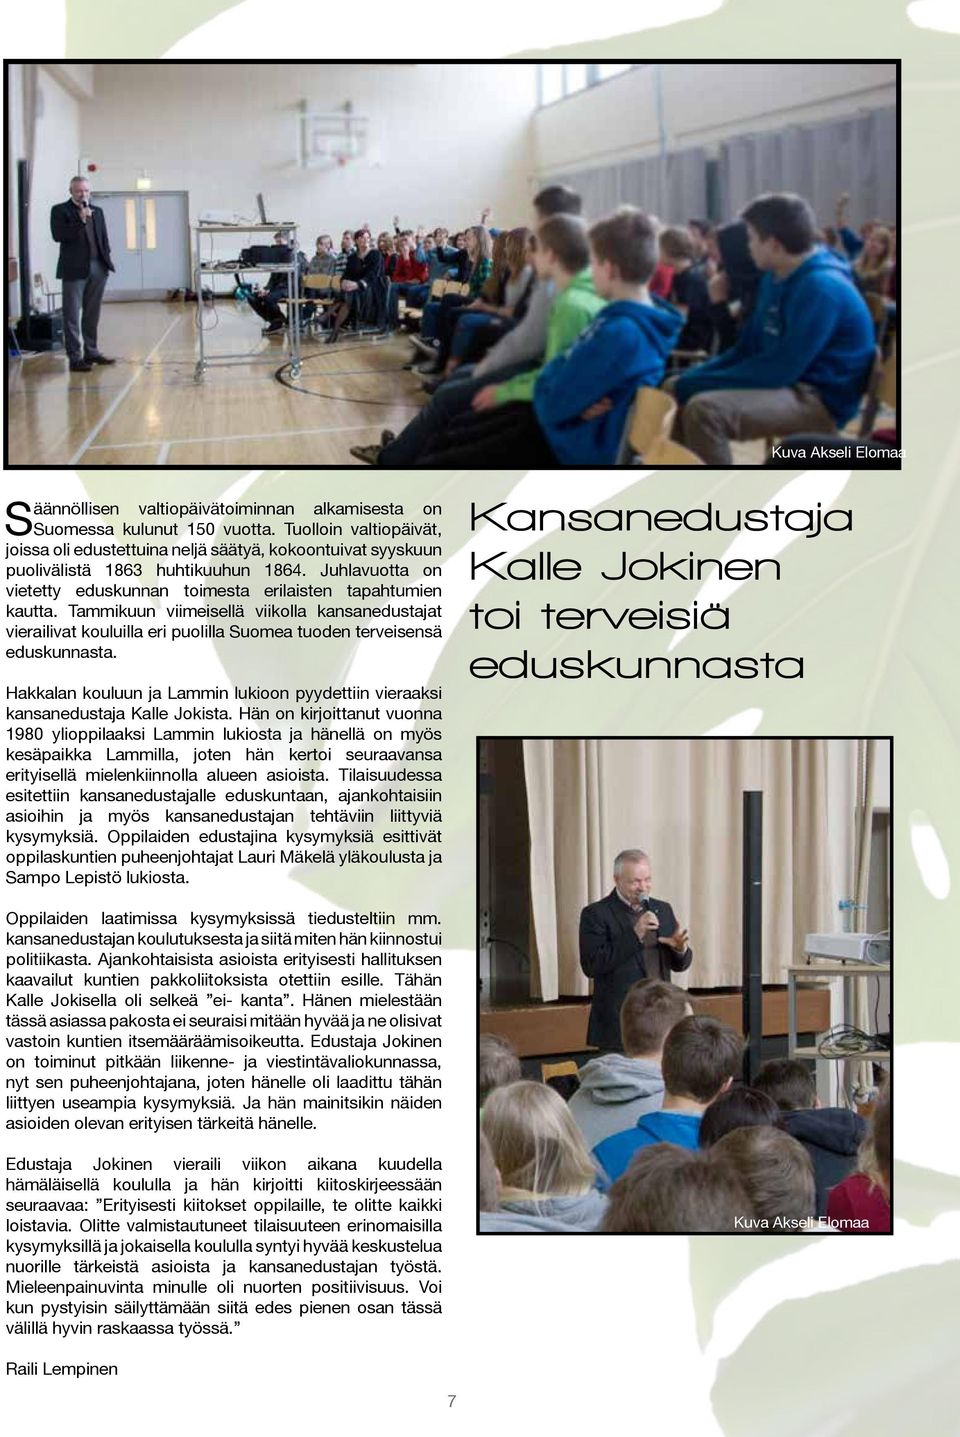 Tammikuun viimeisellä viikolla kansanedustajat vierailivat kouluilla eri puolilla Suomea tuoden terveisensä eduskunnasta.